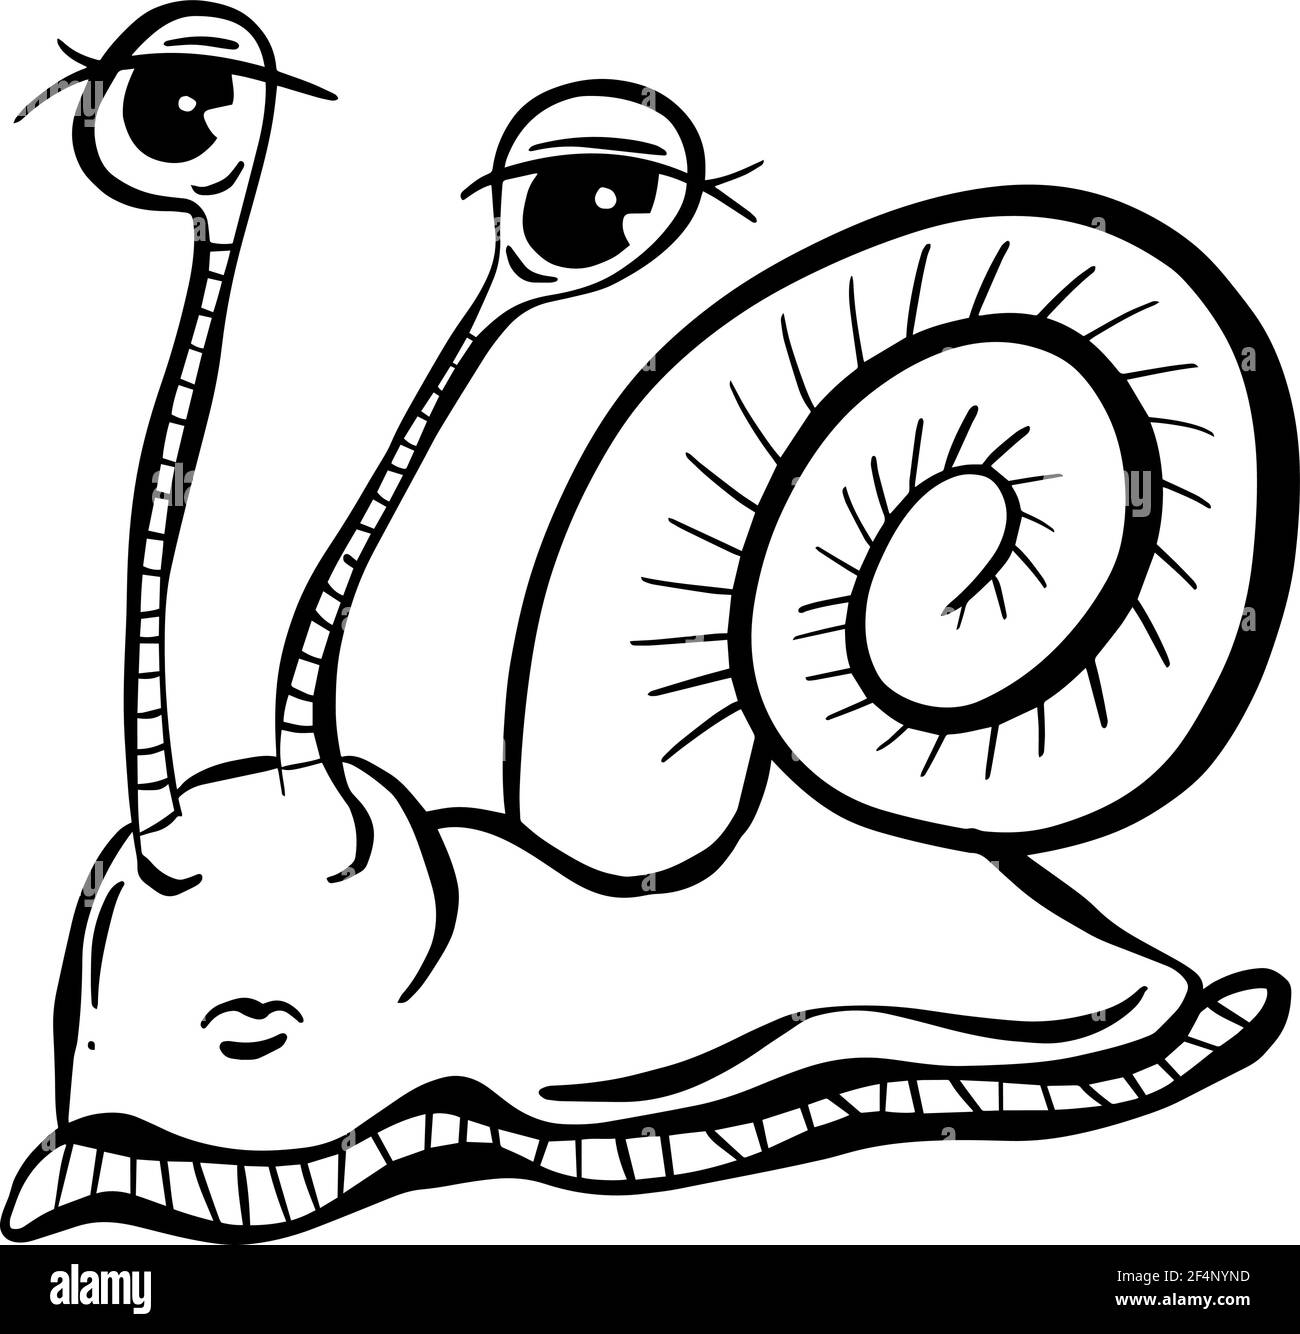 Bande dessinée escargot drôle Illustration avec les yeux Illustration de Vecteur